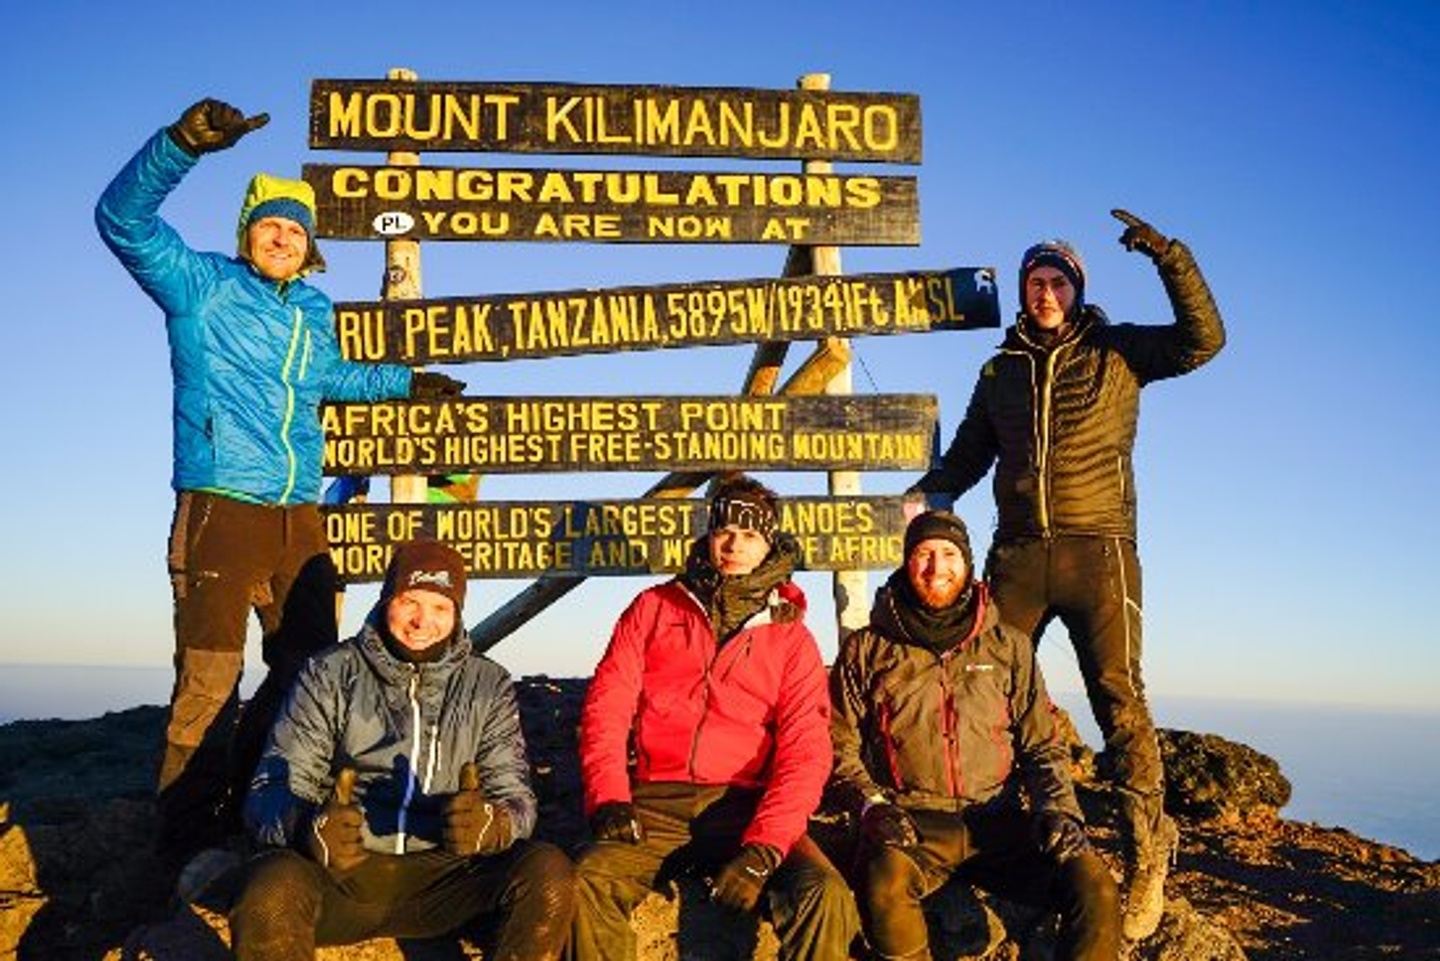 Climbing Mount Kilimanjaro via The Machame Route